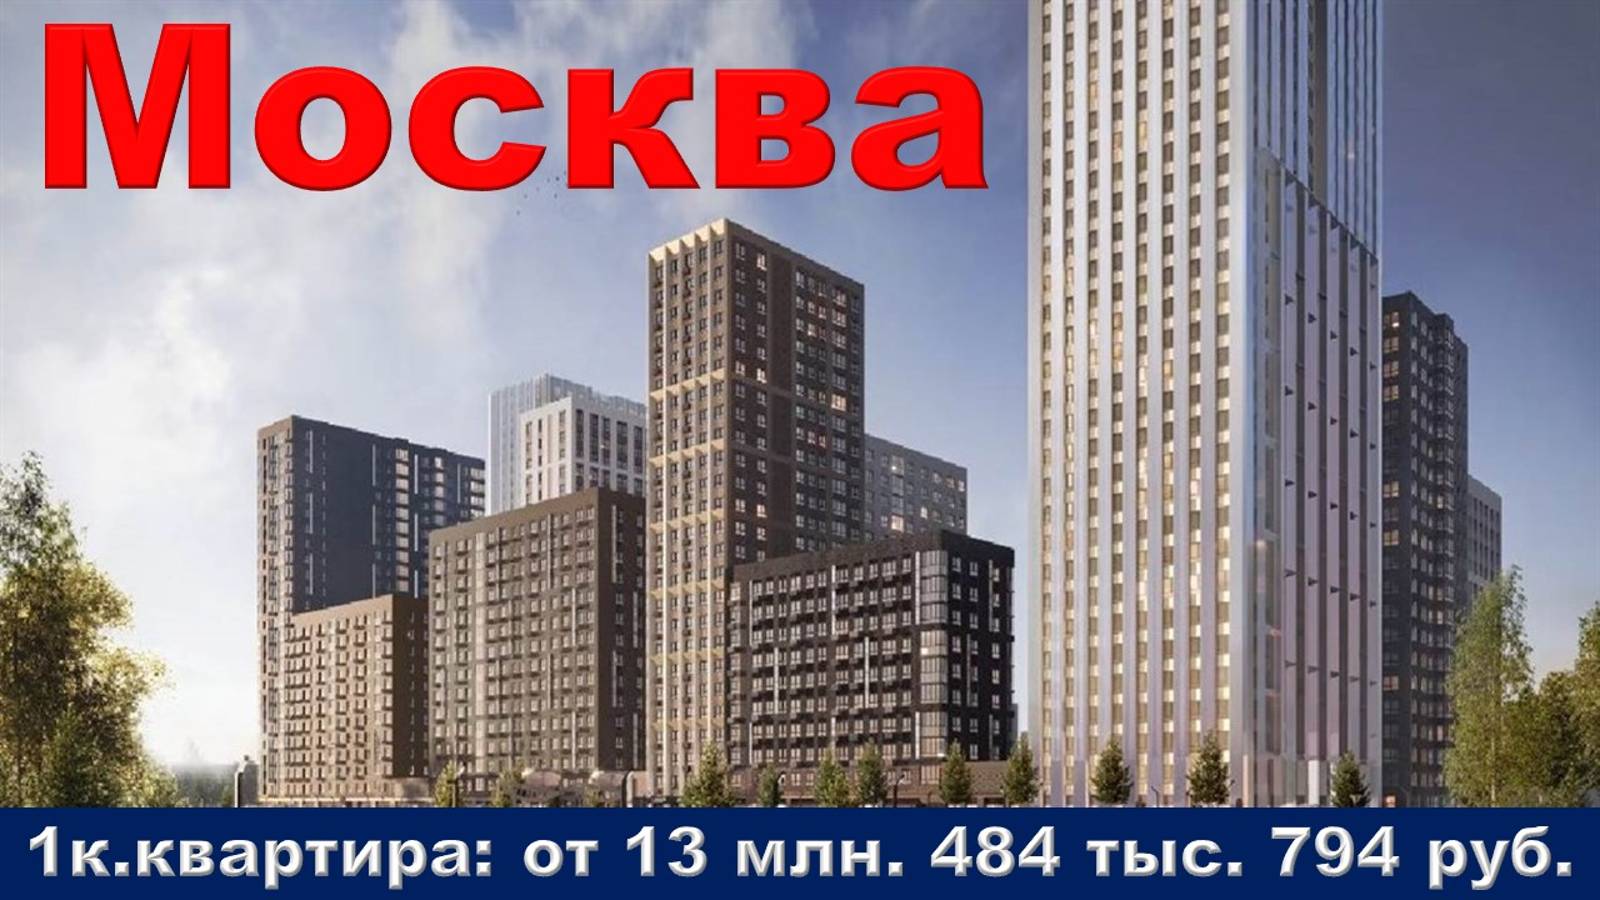 Москва. 1к. квартира от 13 млн. 484 тыс. 794 руб.